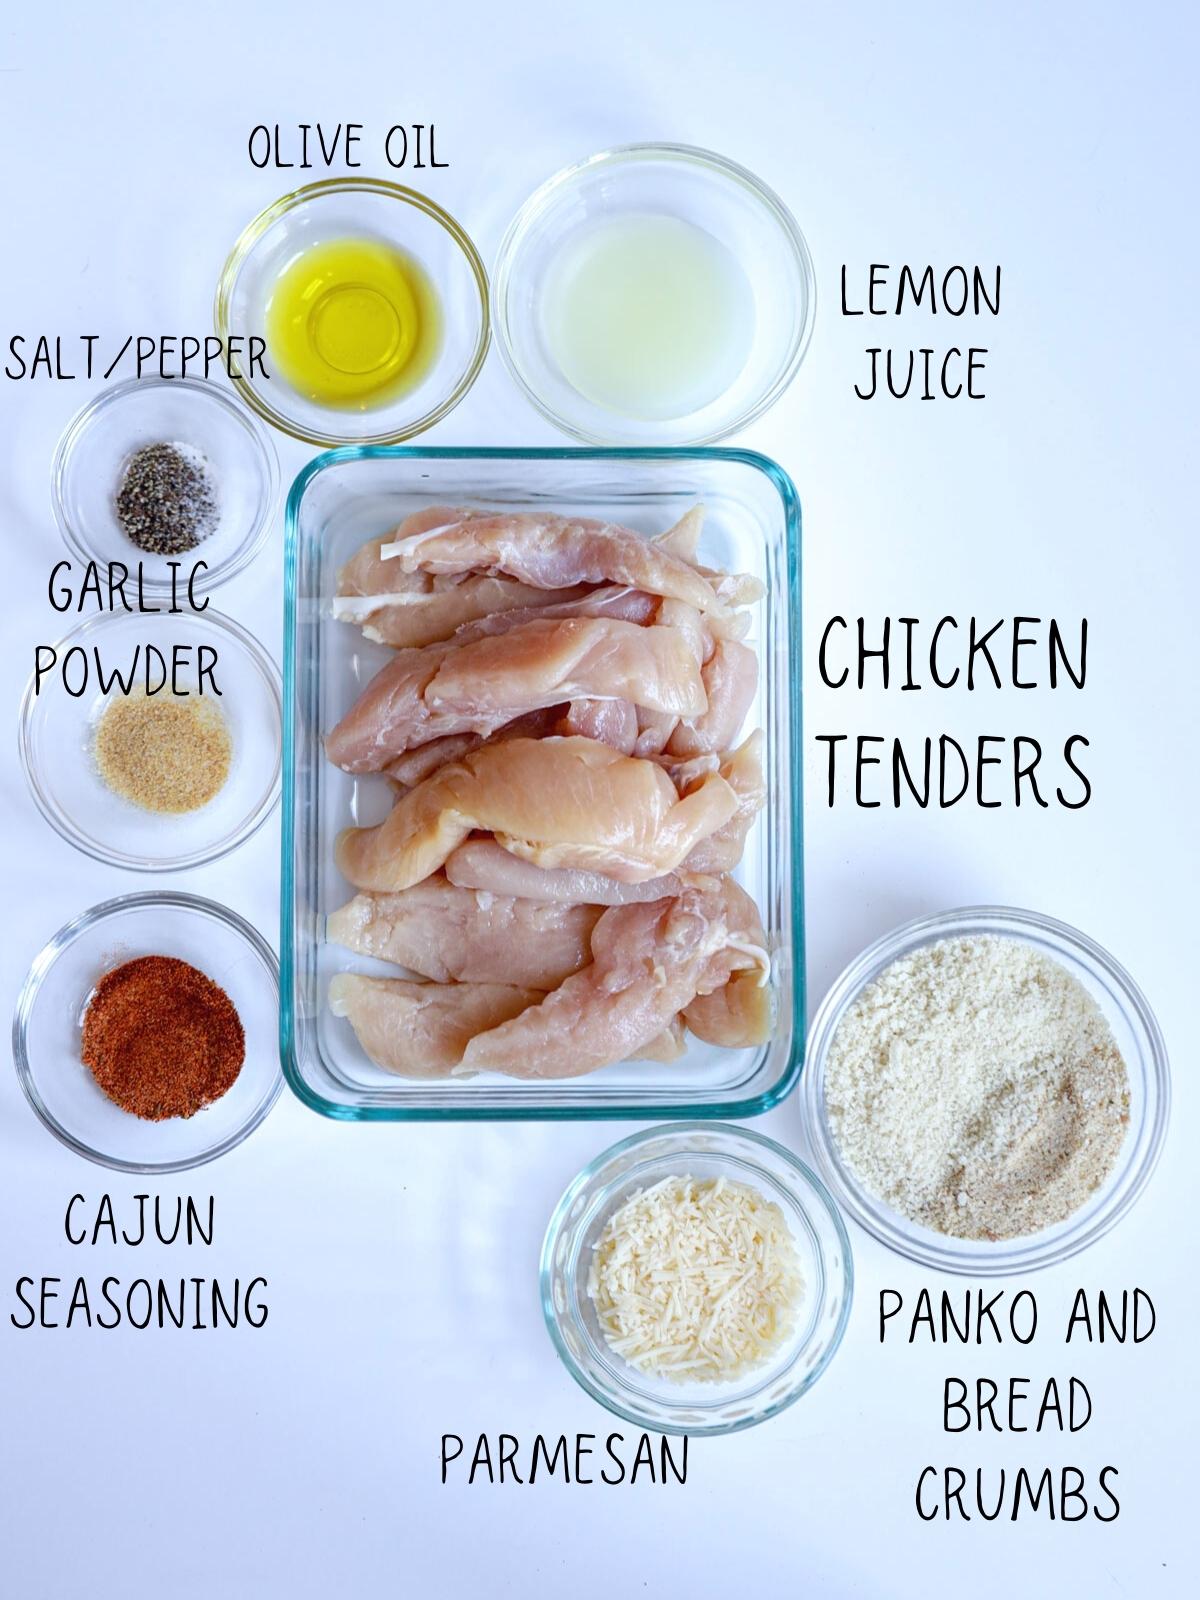 ingredients for air fryer chicken tenders including garlic powder, cajun seasoning, panko and bread crumbs